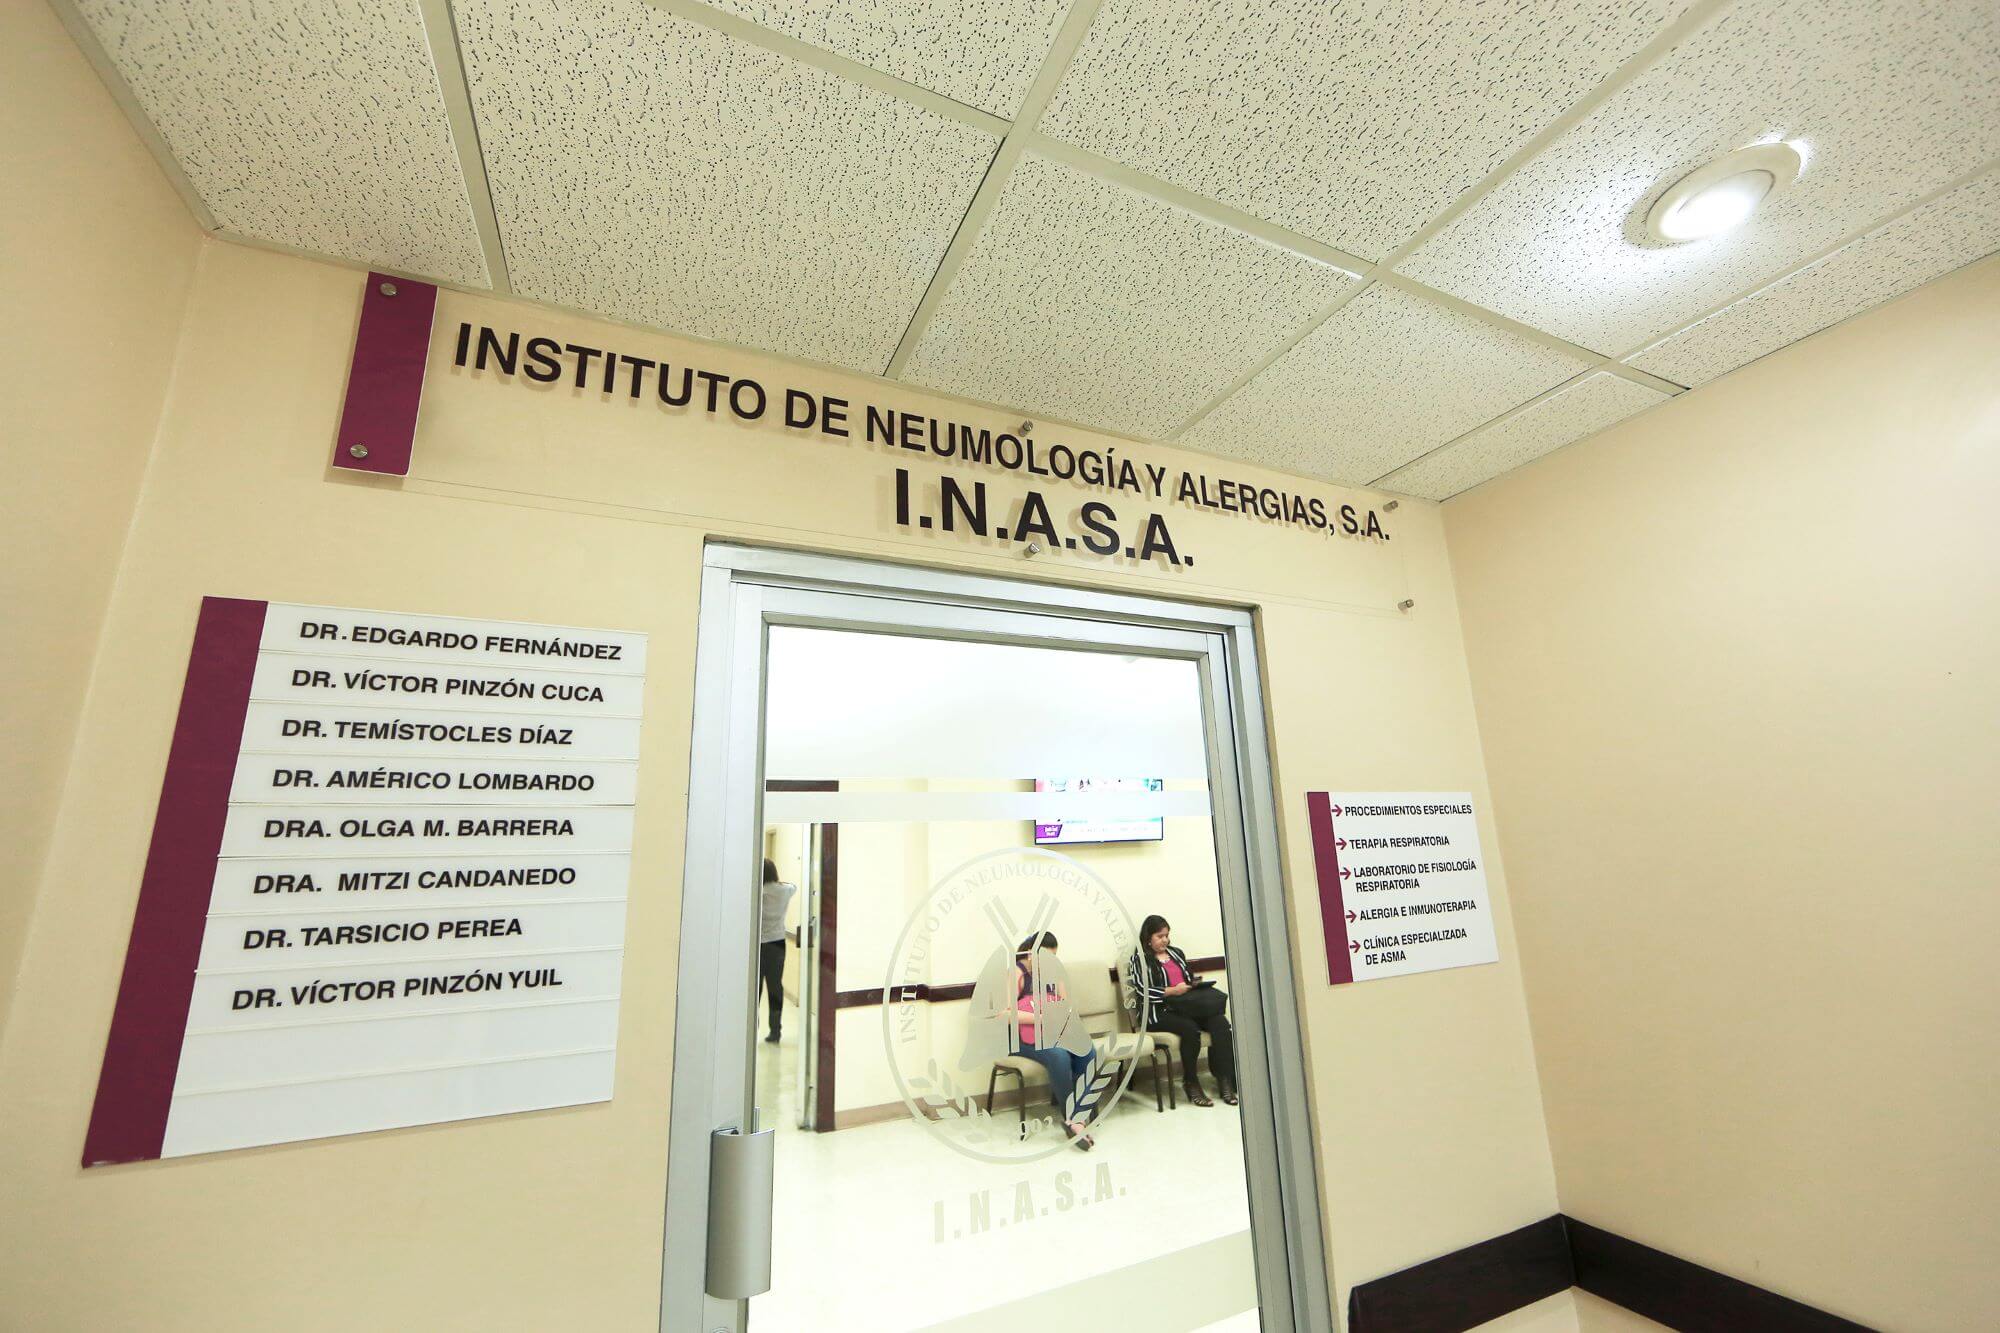 Instituto de Neumonologia